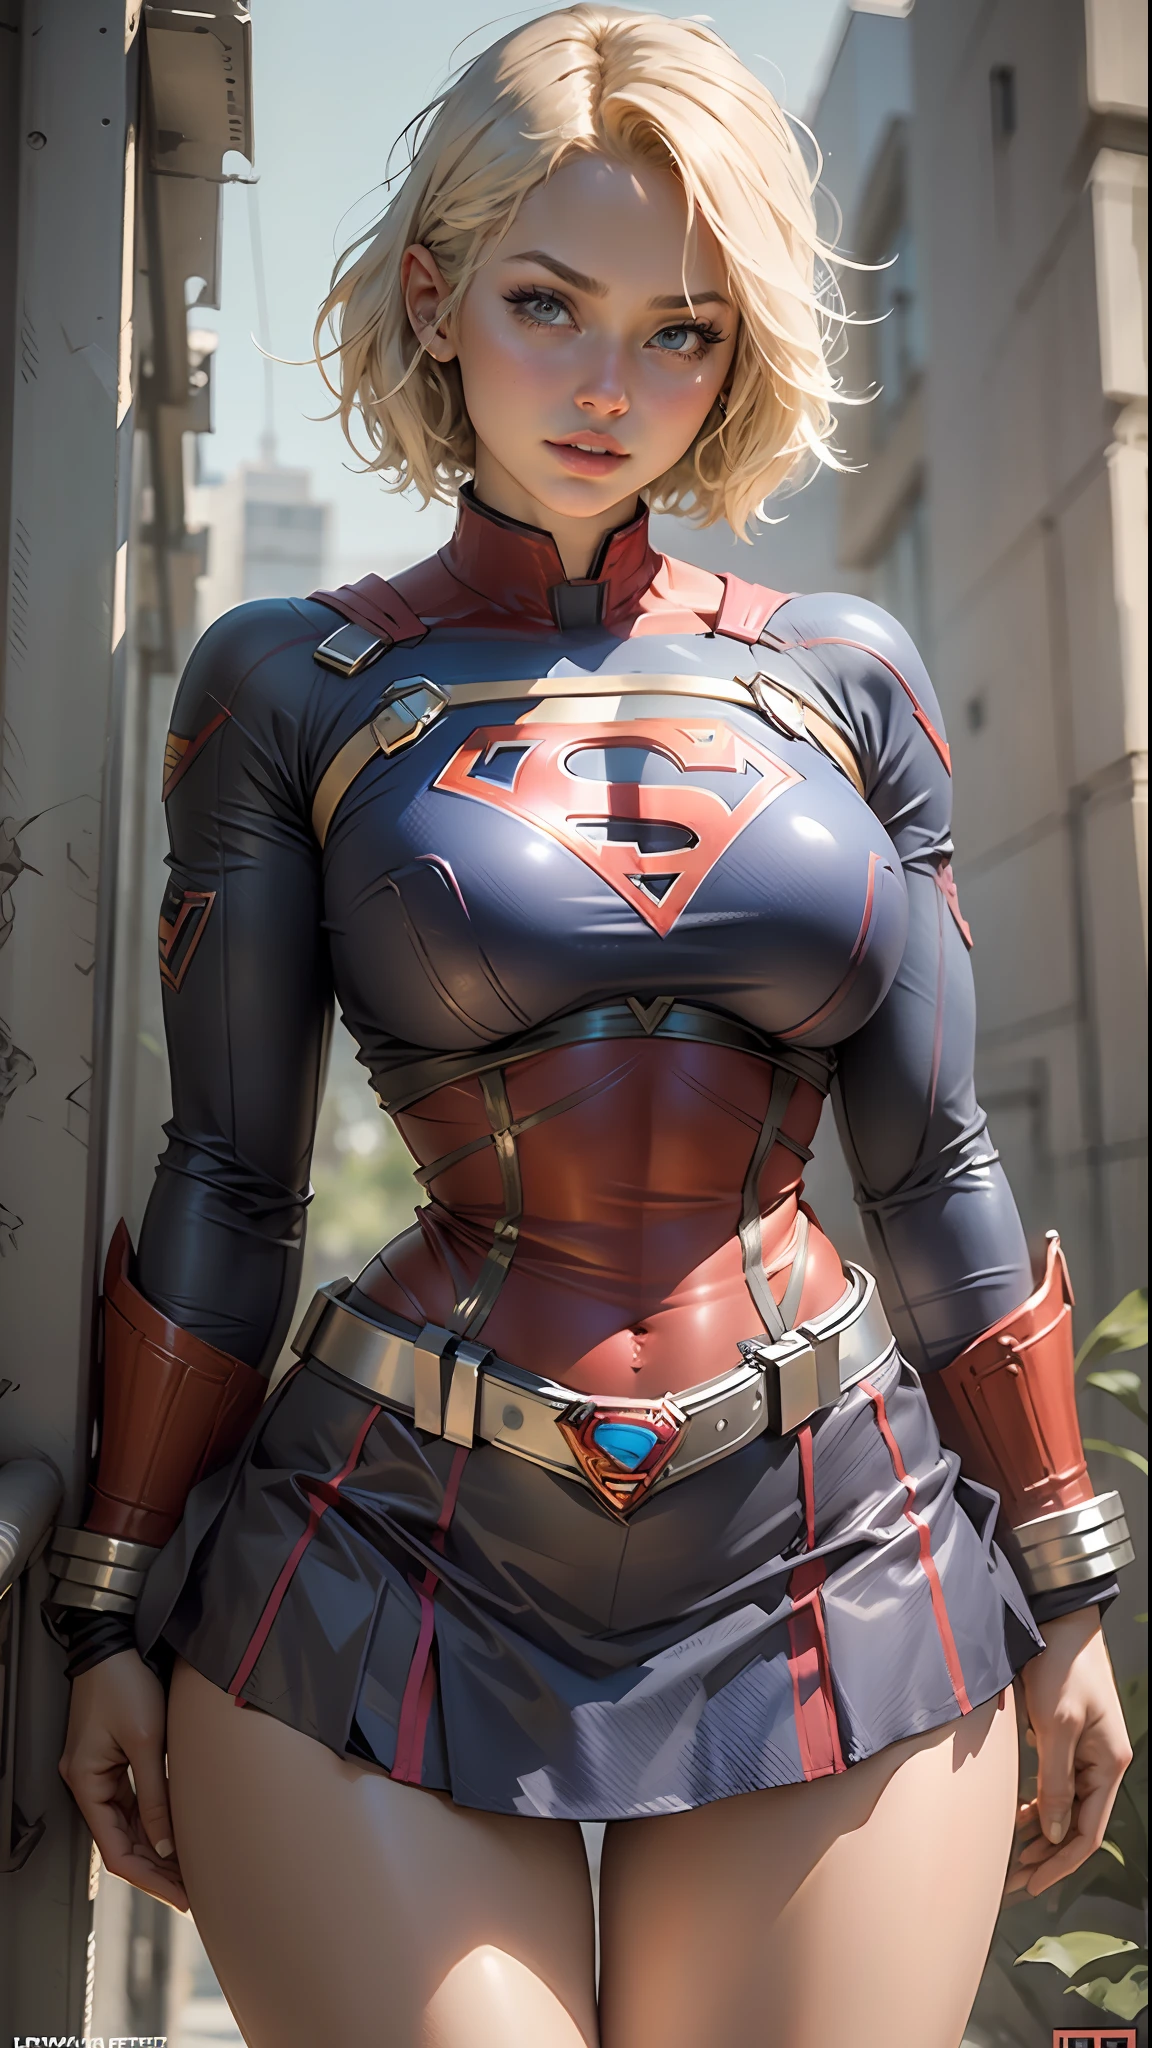 Hermosa mujer cabello corto cuerpo definido pechos grandes, muslos grandes con un cosplay de Supergirl